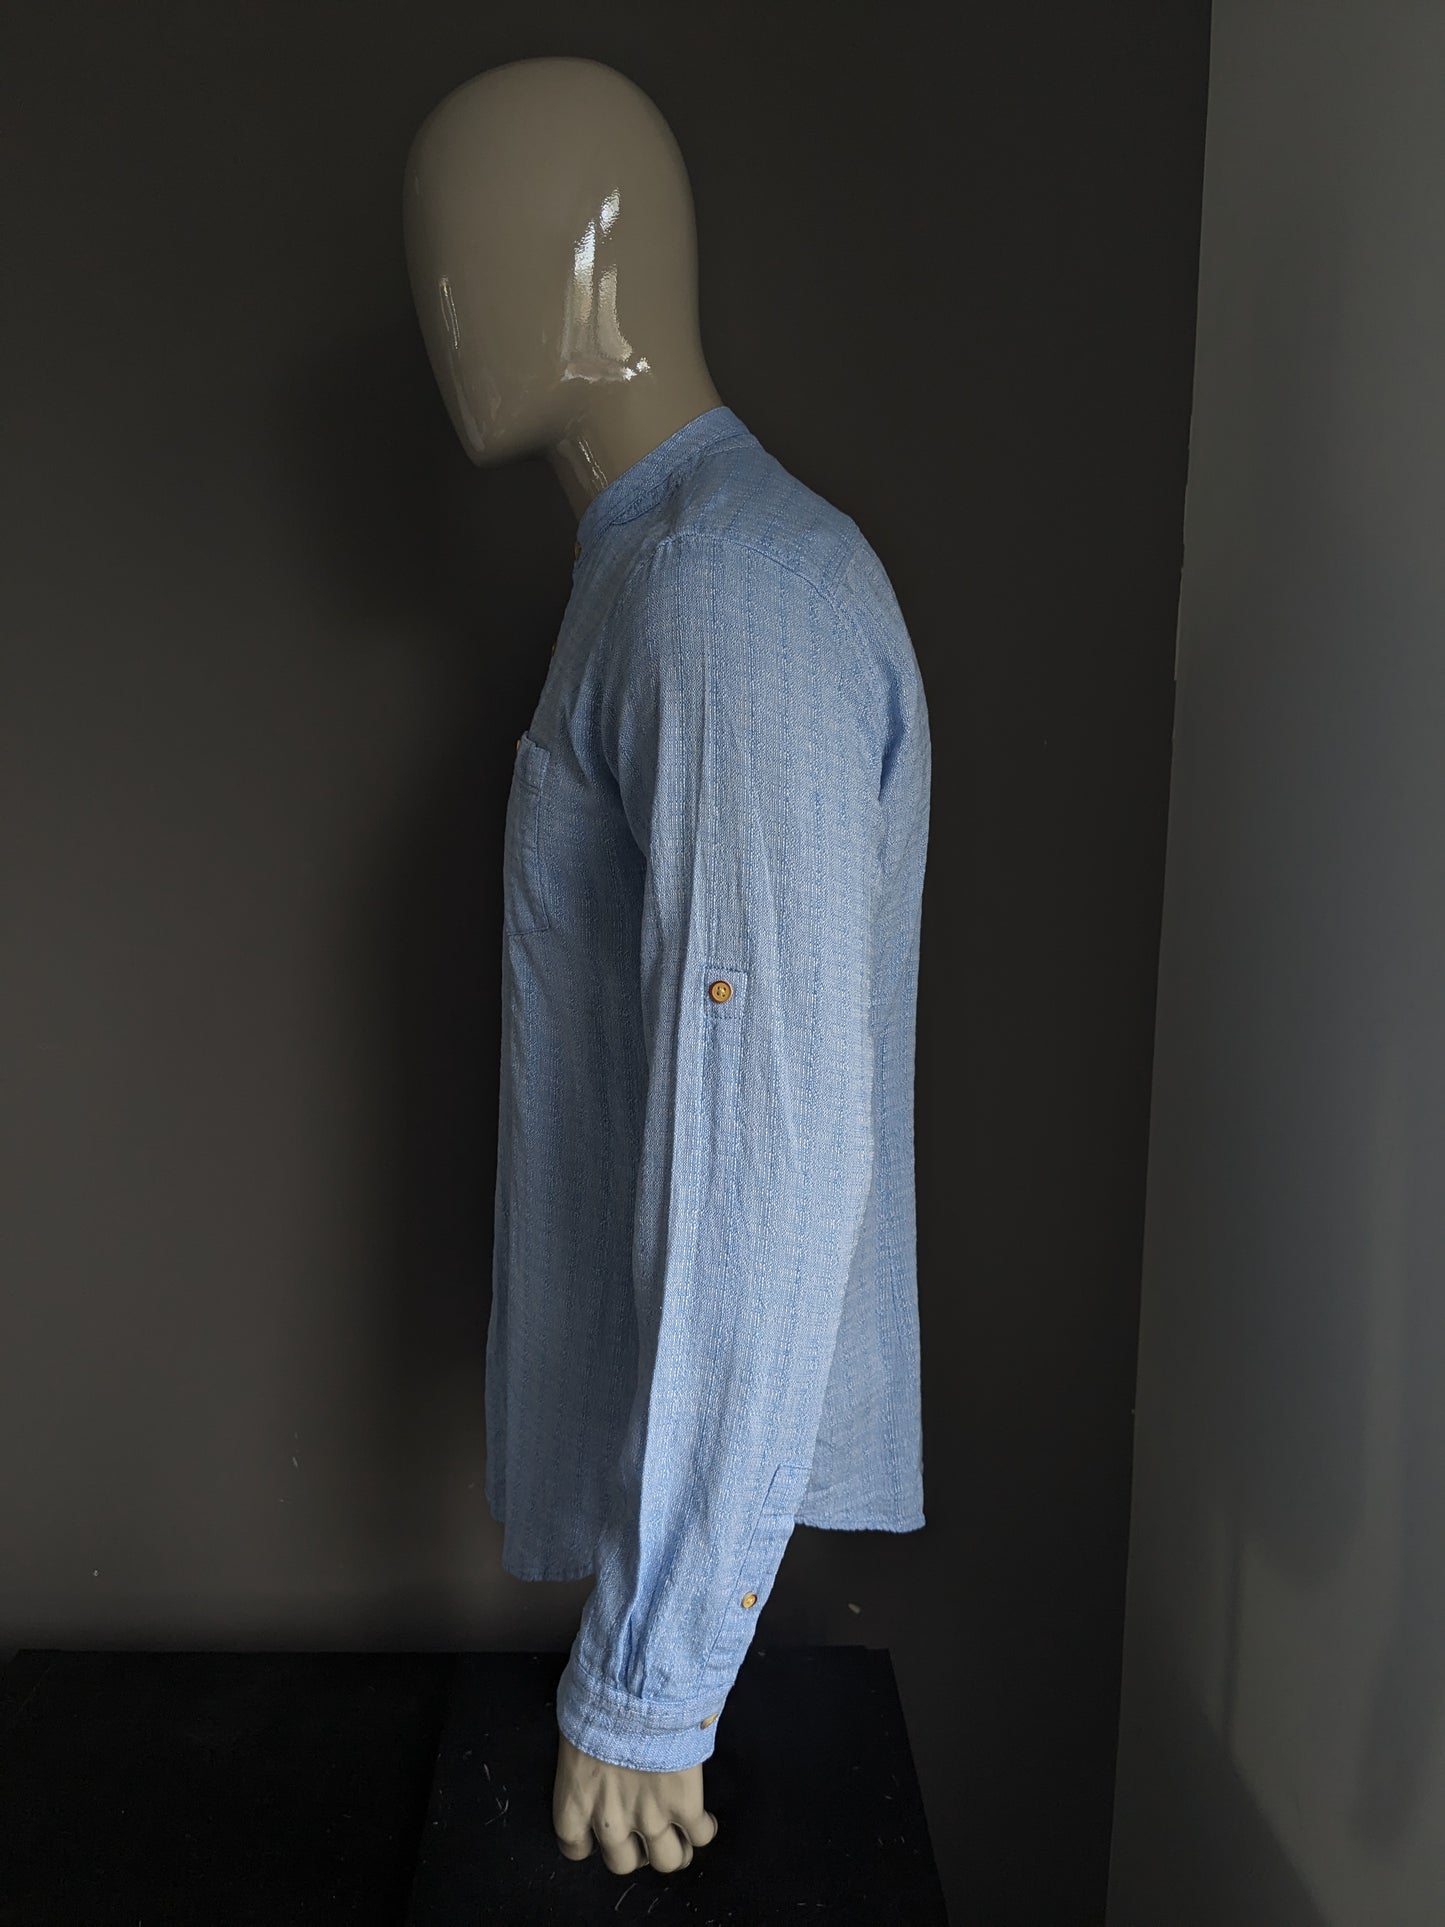 Camisa de smog con mao / granjeros / cuello vertical. Azul mezclado. Tamaño L. Fit Slim.